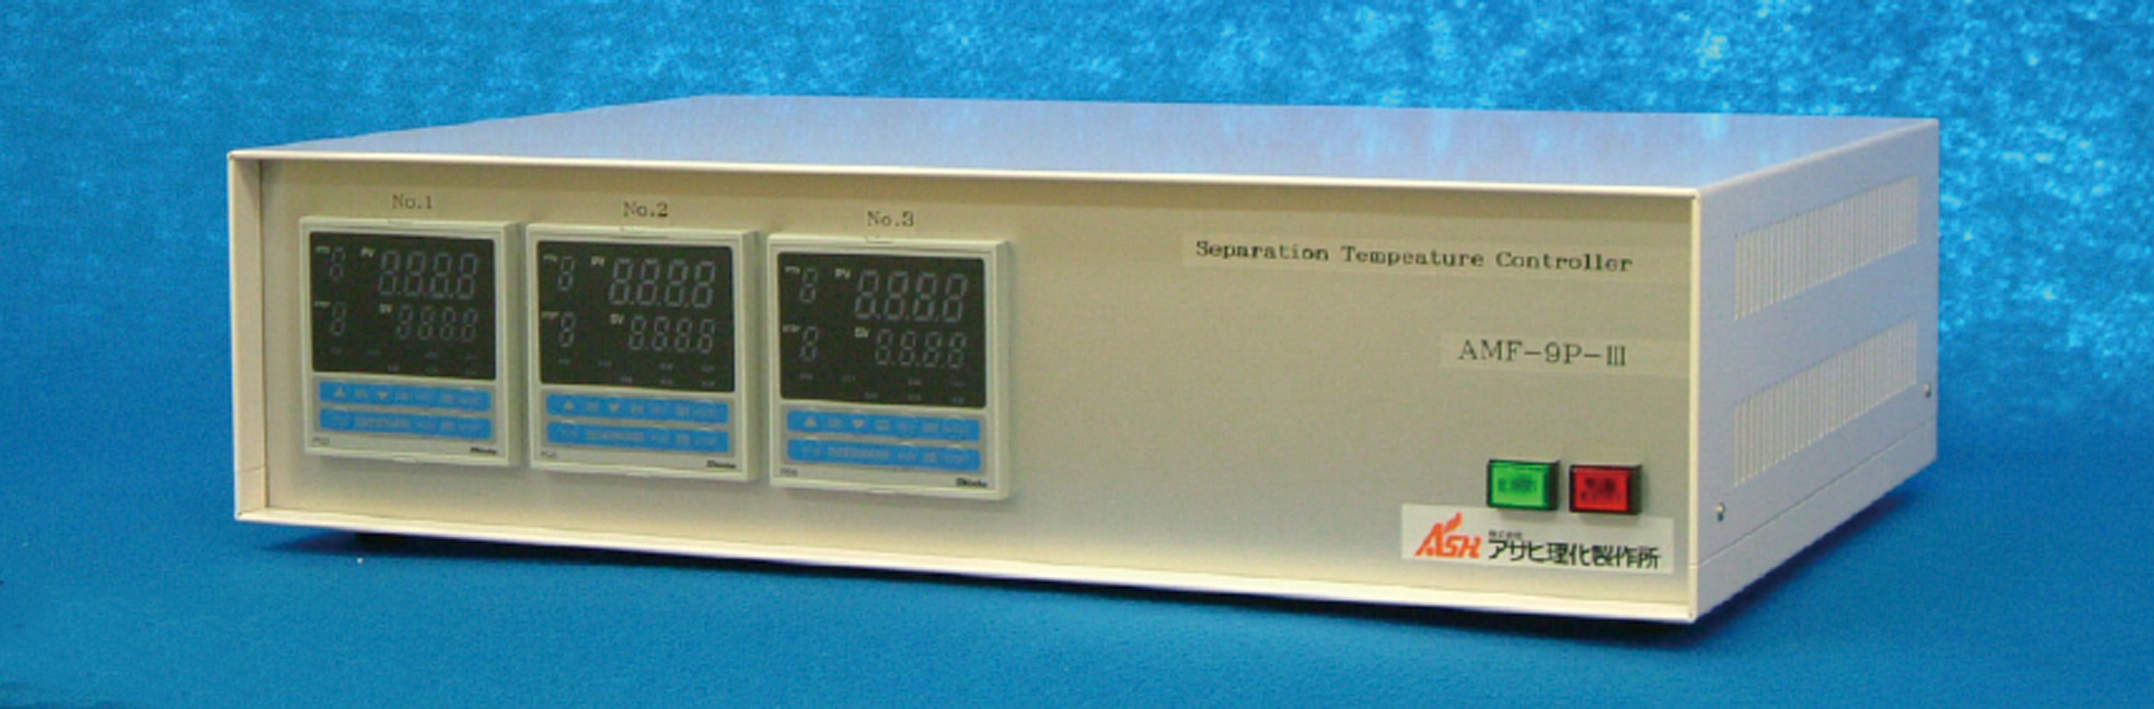 ３ゾーン専用温度コントローラー|||ＡＭＦ－９Ｐ－Ⅲ/三区温度控制器| | | AMF-9P-Ⅲ 